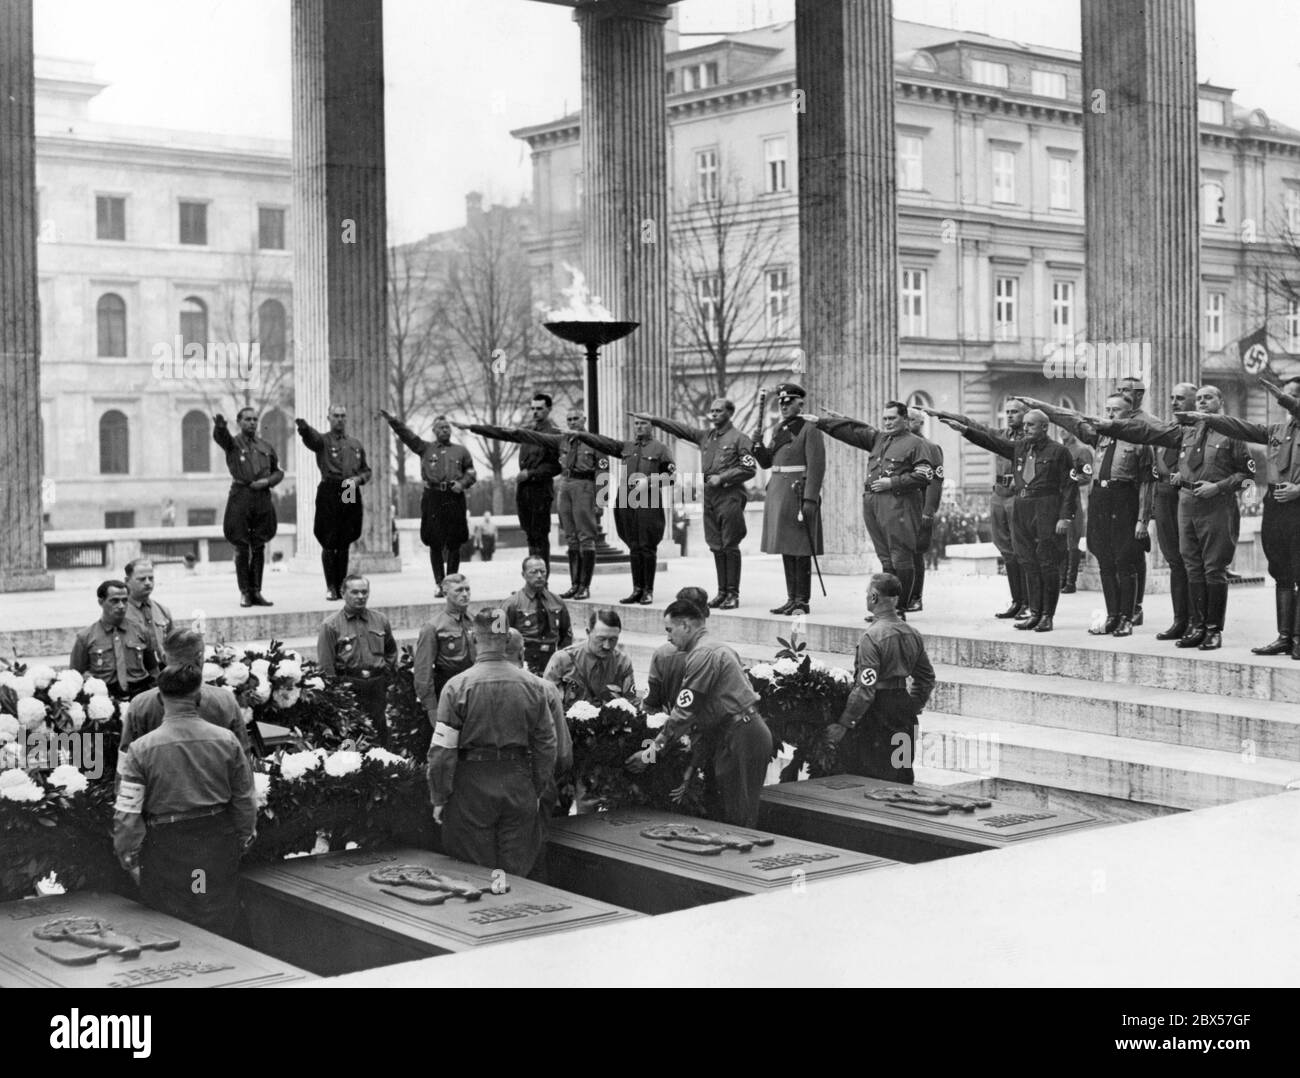 Nach dem traditionellen marsch in die Feldherrenhalle legt Adolf Hitler in einem Ehrentempel auf dem Münchener Königsplatz einen Kranz für die Gefallenen des Hitler-Ludendorff-Putsches. Oben mit Nazi-Gruß sind wahrscheinlich von links nach rechts zu sehen: Hanns Bunge (1. V. l.), Max Amann (3. V. l.), Wilhelm Frick (5. V. l.), Ulrich Graf (6. V. l.), Werner von Blomberg (8. V. l.), Hermann Göring, Adolf Wagner, Hans Frank, Julius Streicher, Heinrich Himmler, Hermann Kriebel, Alfred Rosenberg und Karl Fiehler. Im Hintergrund ist das Brown House. Stockfoto